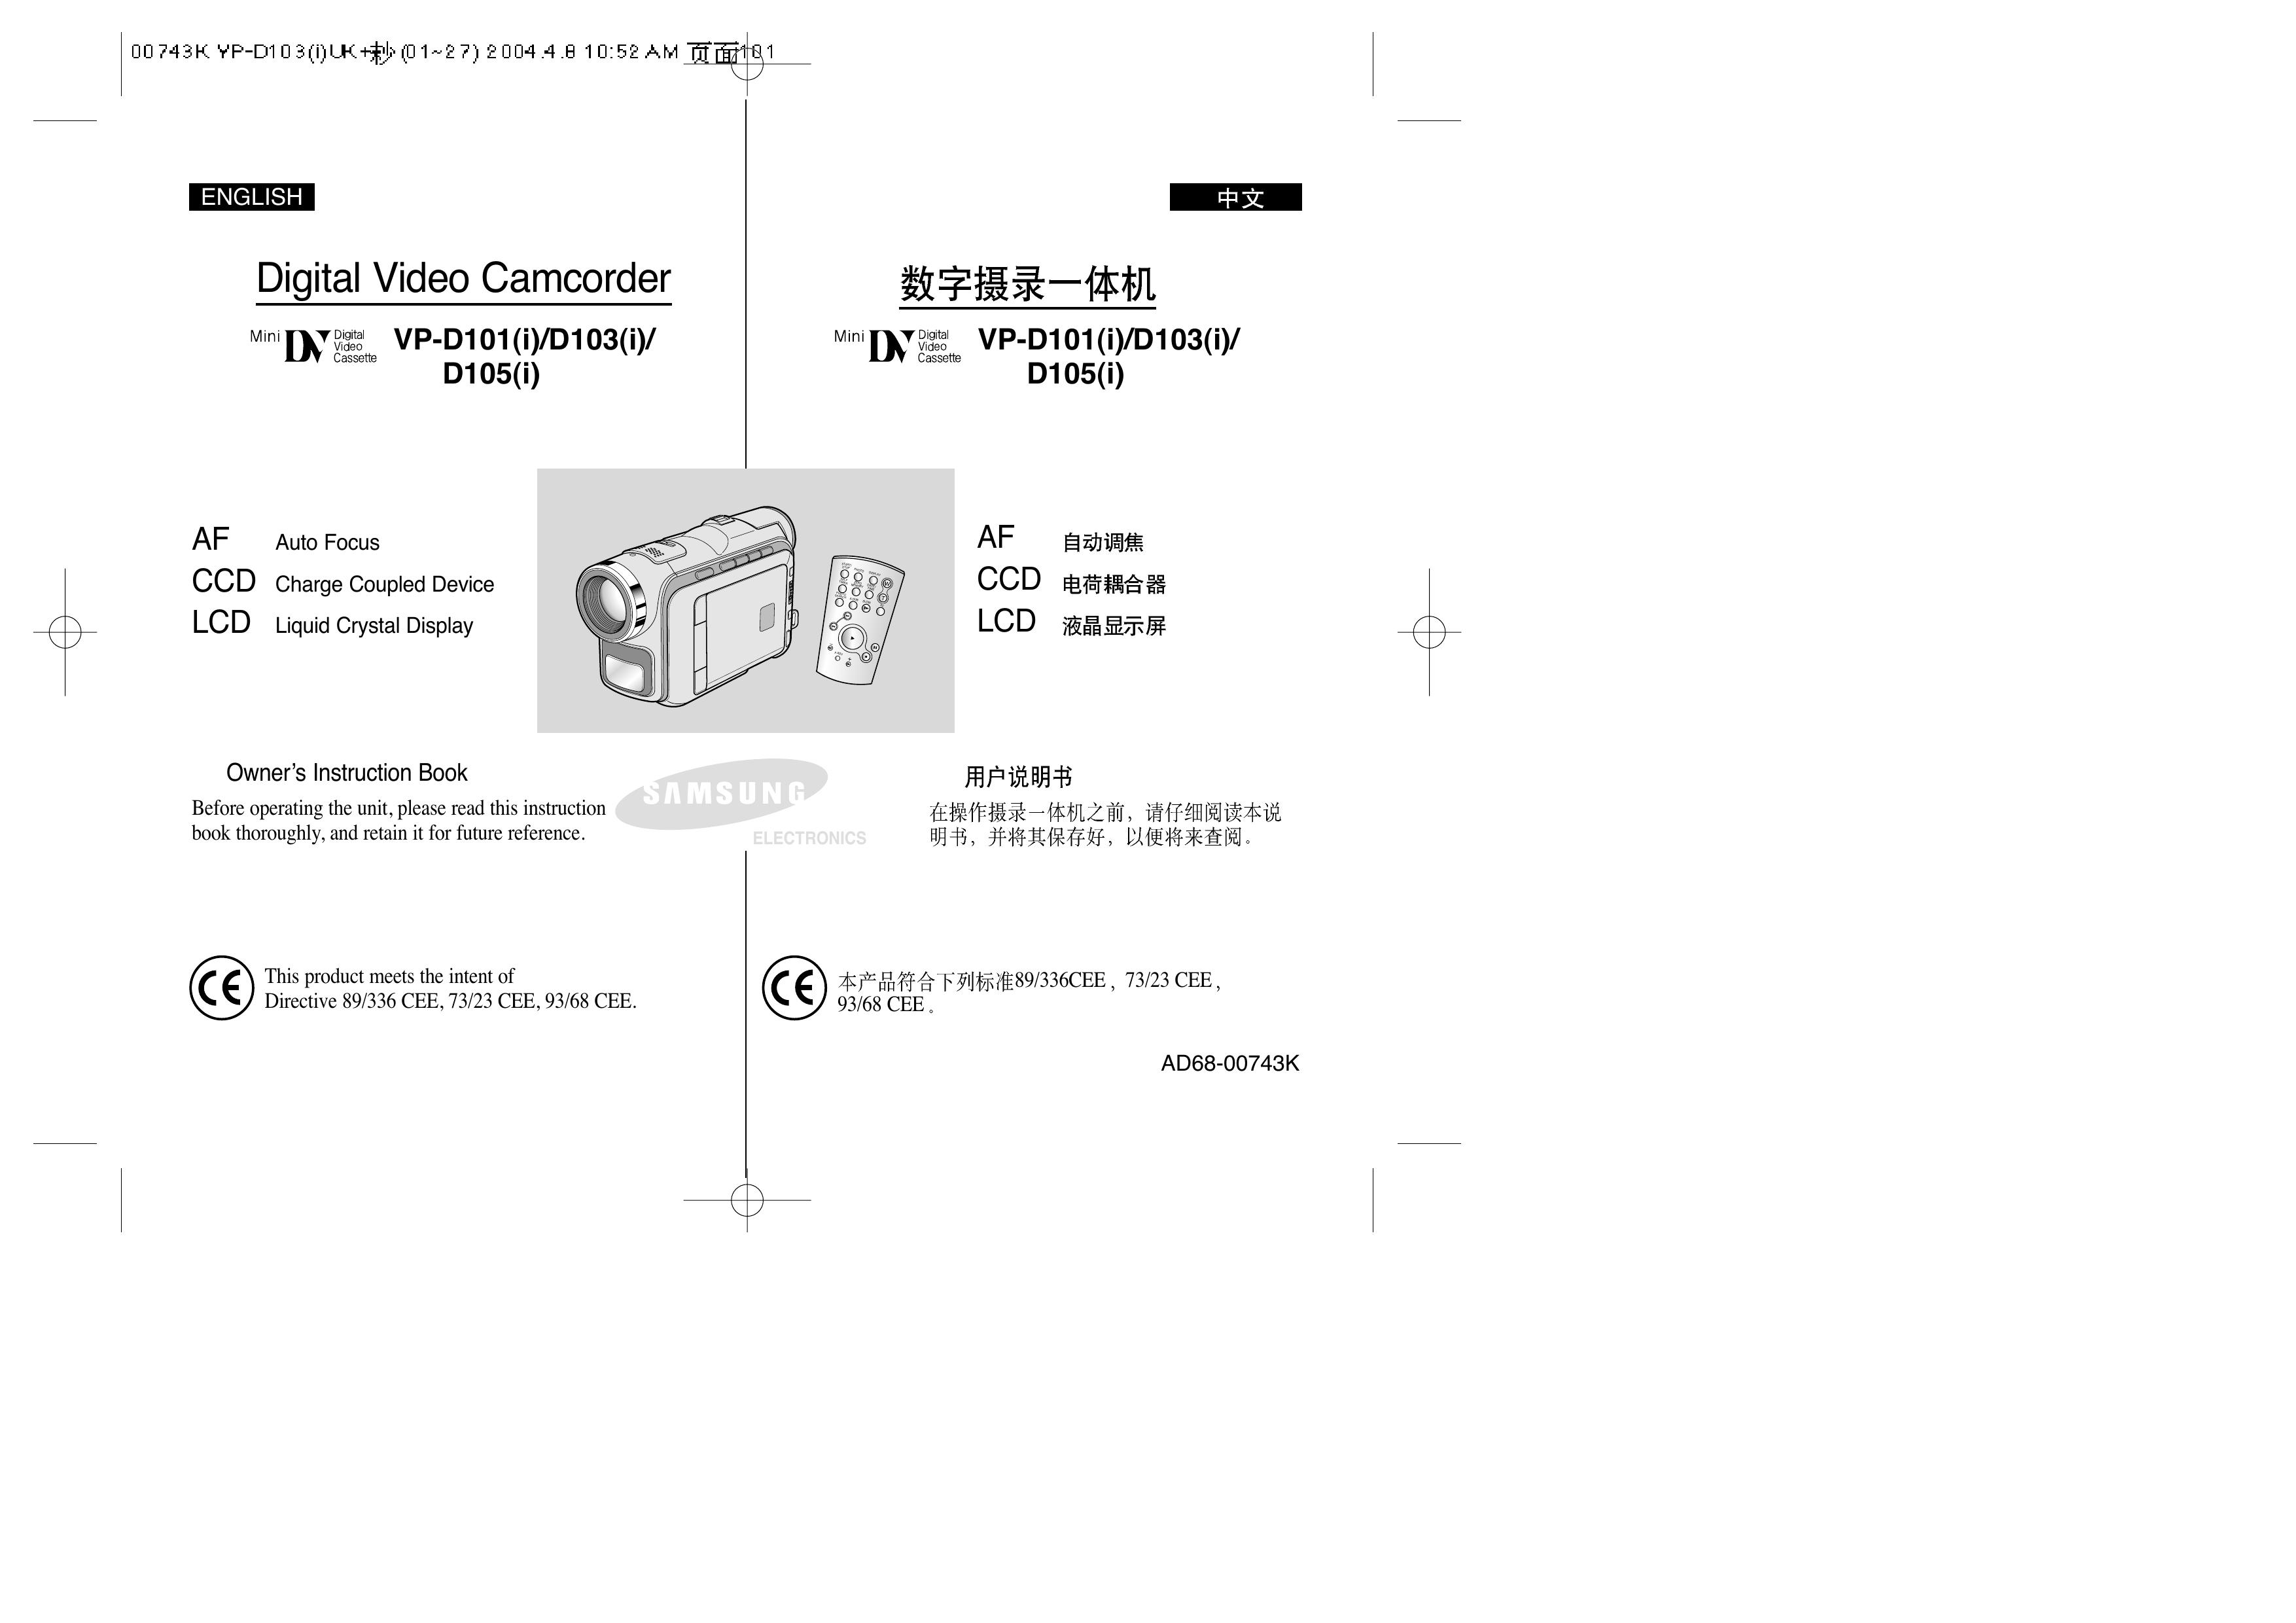 Samsung D105(i) Camcorder User Manual